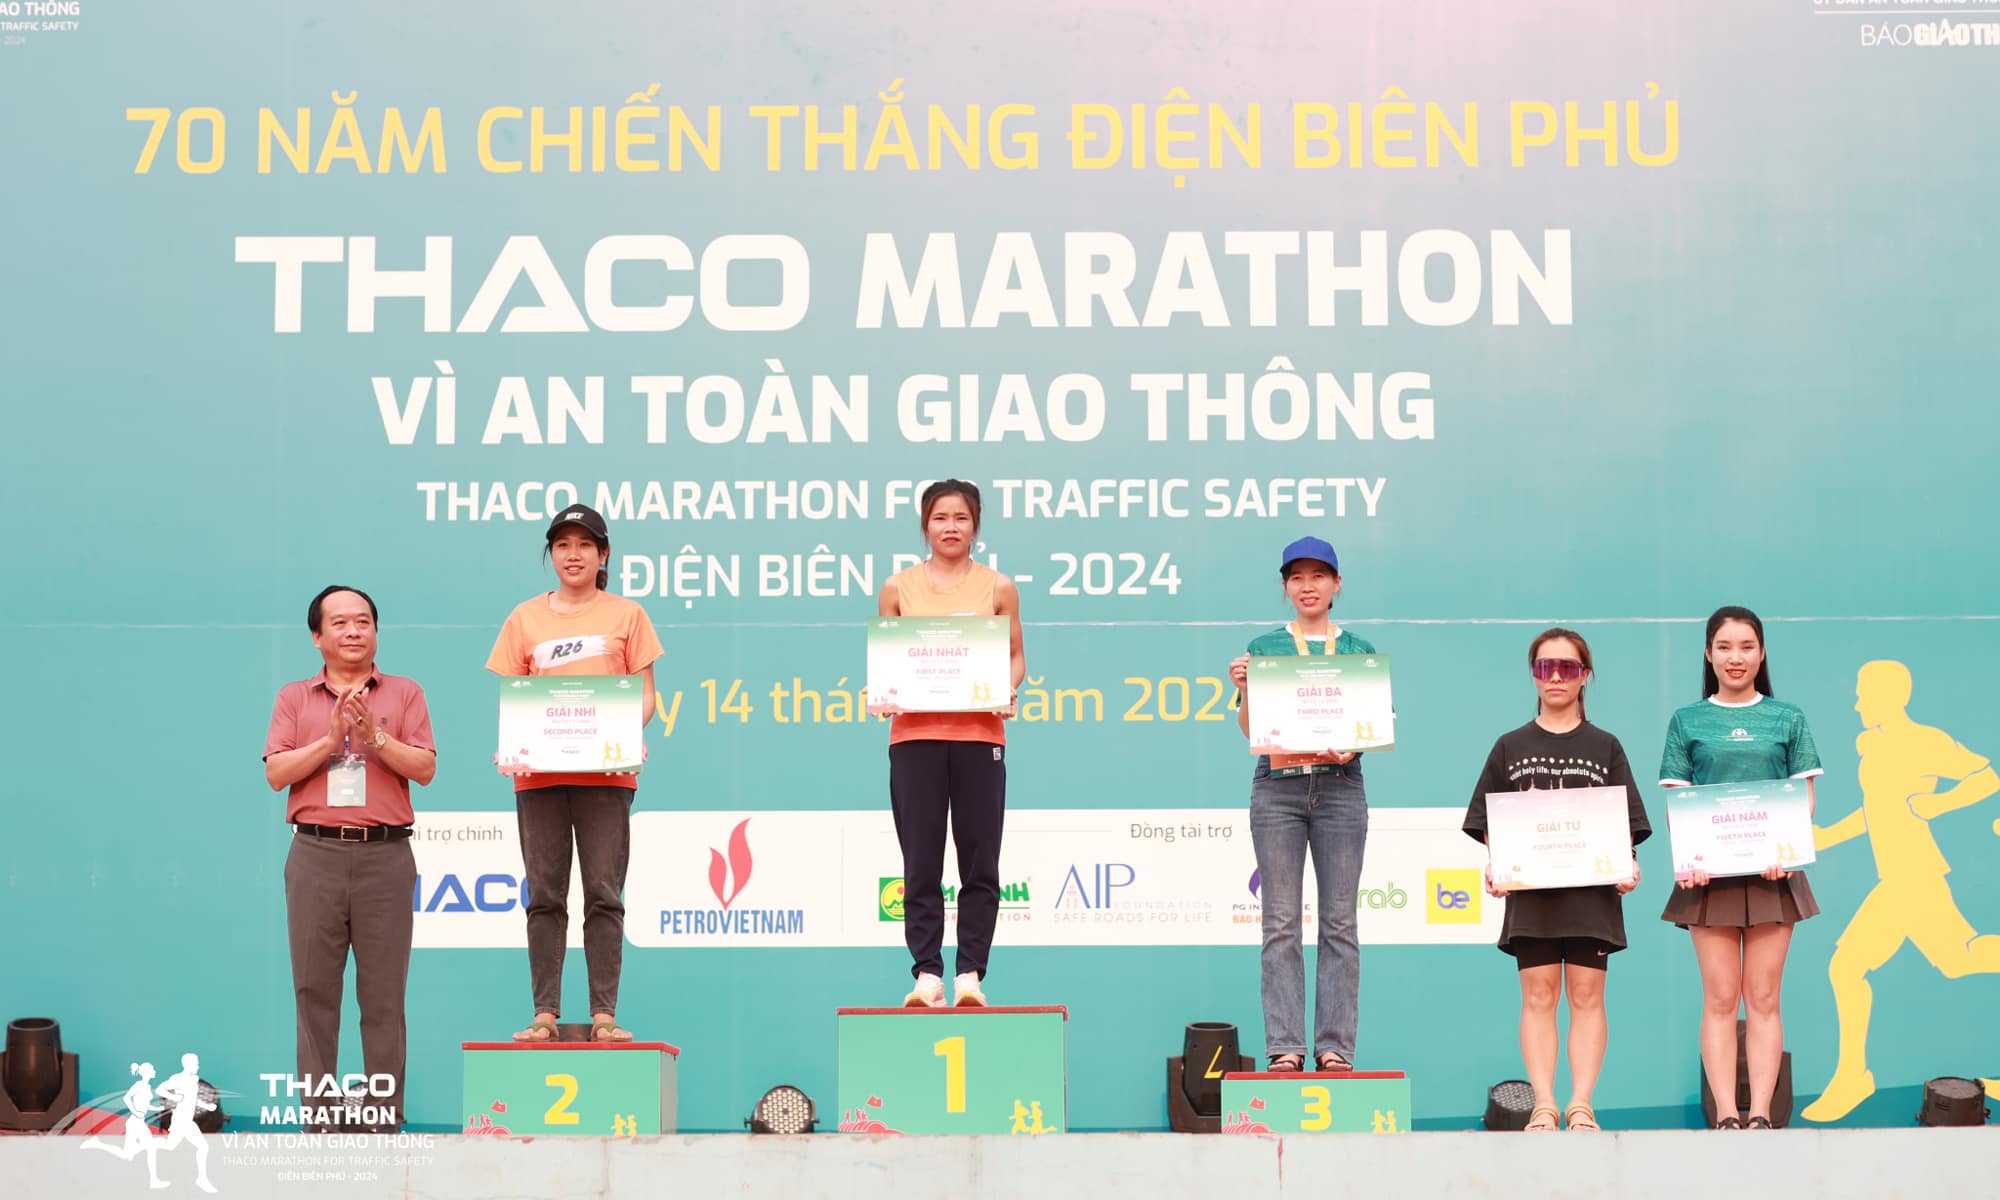 Chị Nguyễn Thị Nhâm – Nhân viên THACO AUTO Sơn La (ngoài cùng bên phải) về đích thứ 5 ở cự ly 21km